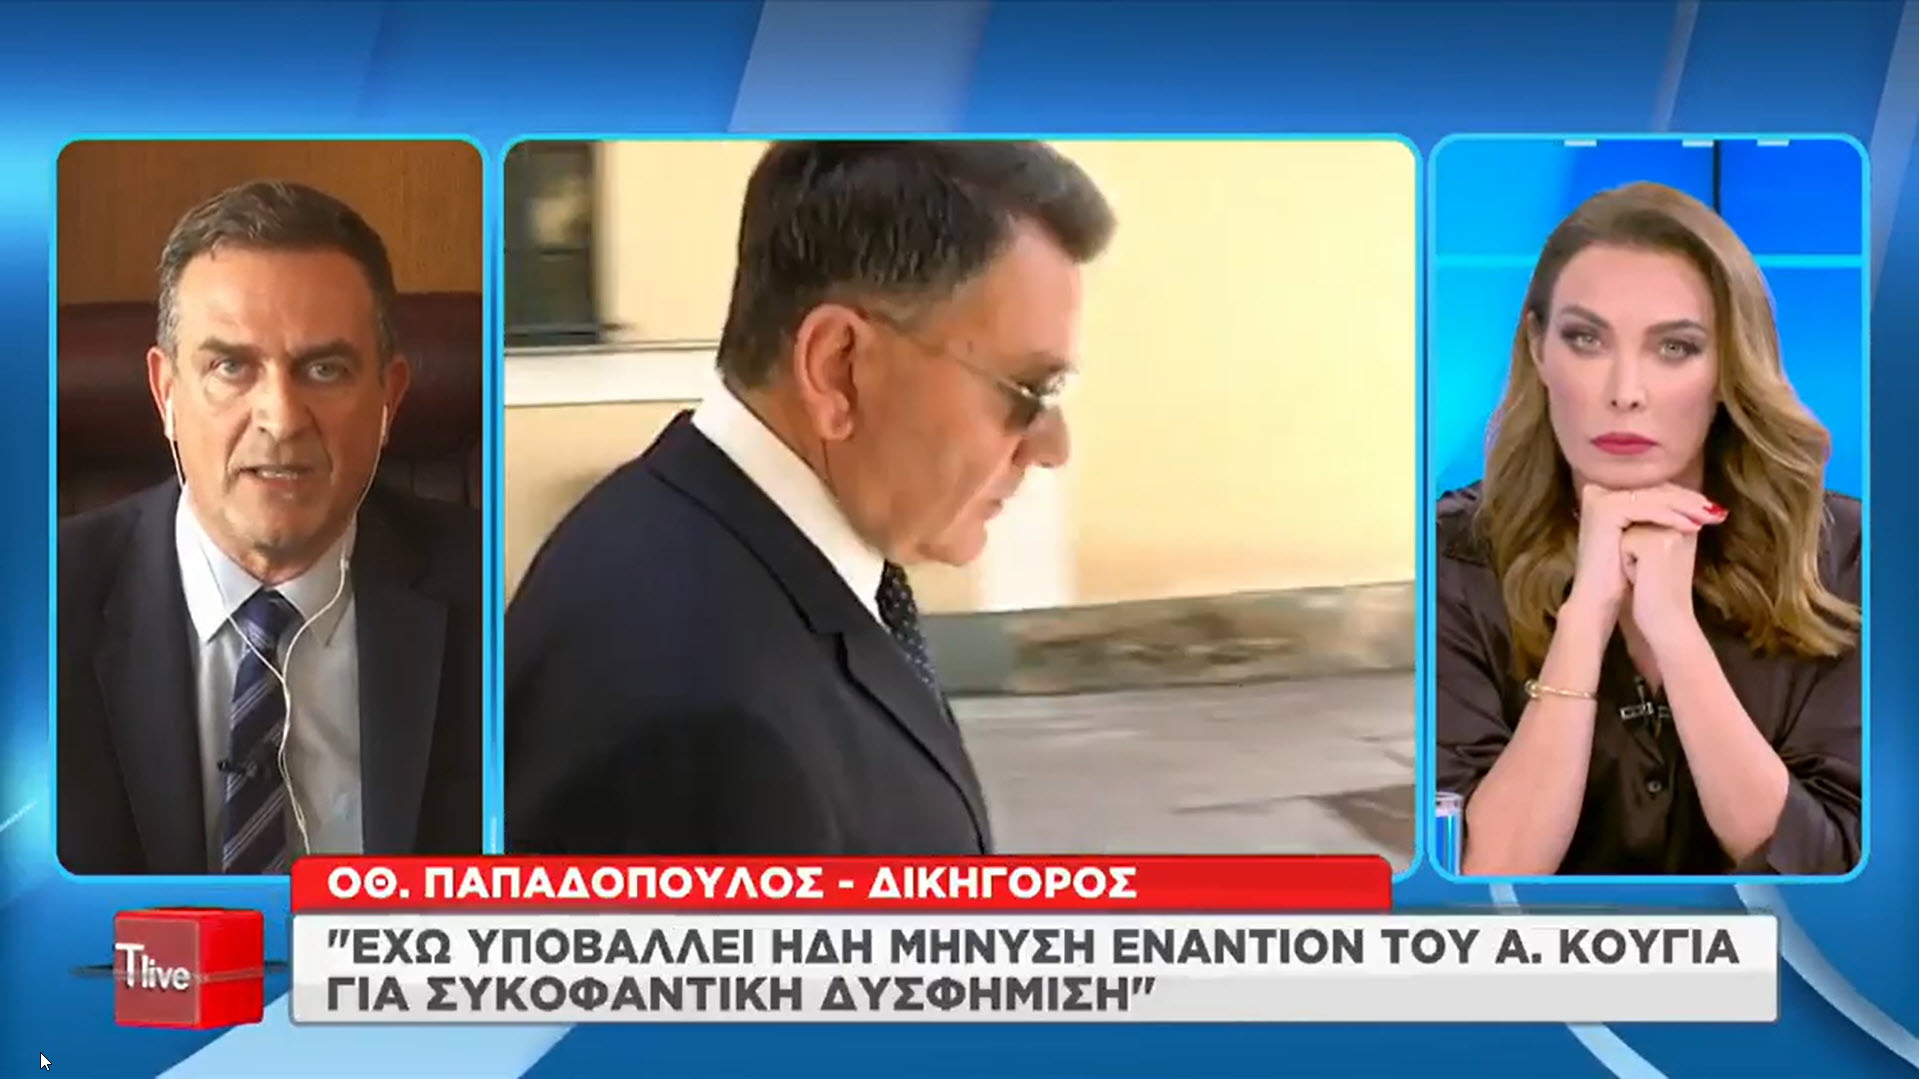 Ο. Παπαδόπουλος: Έχω υποβάλλει ήδη μήνυση εναντίον του Αλ. Κούγια!